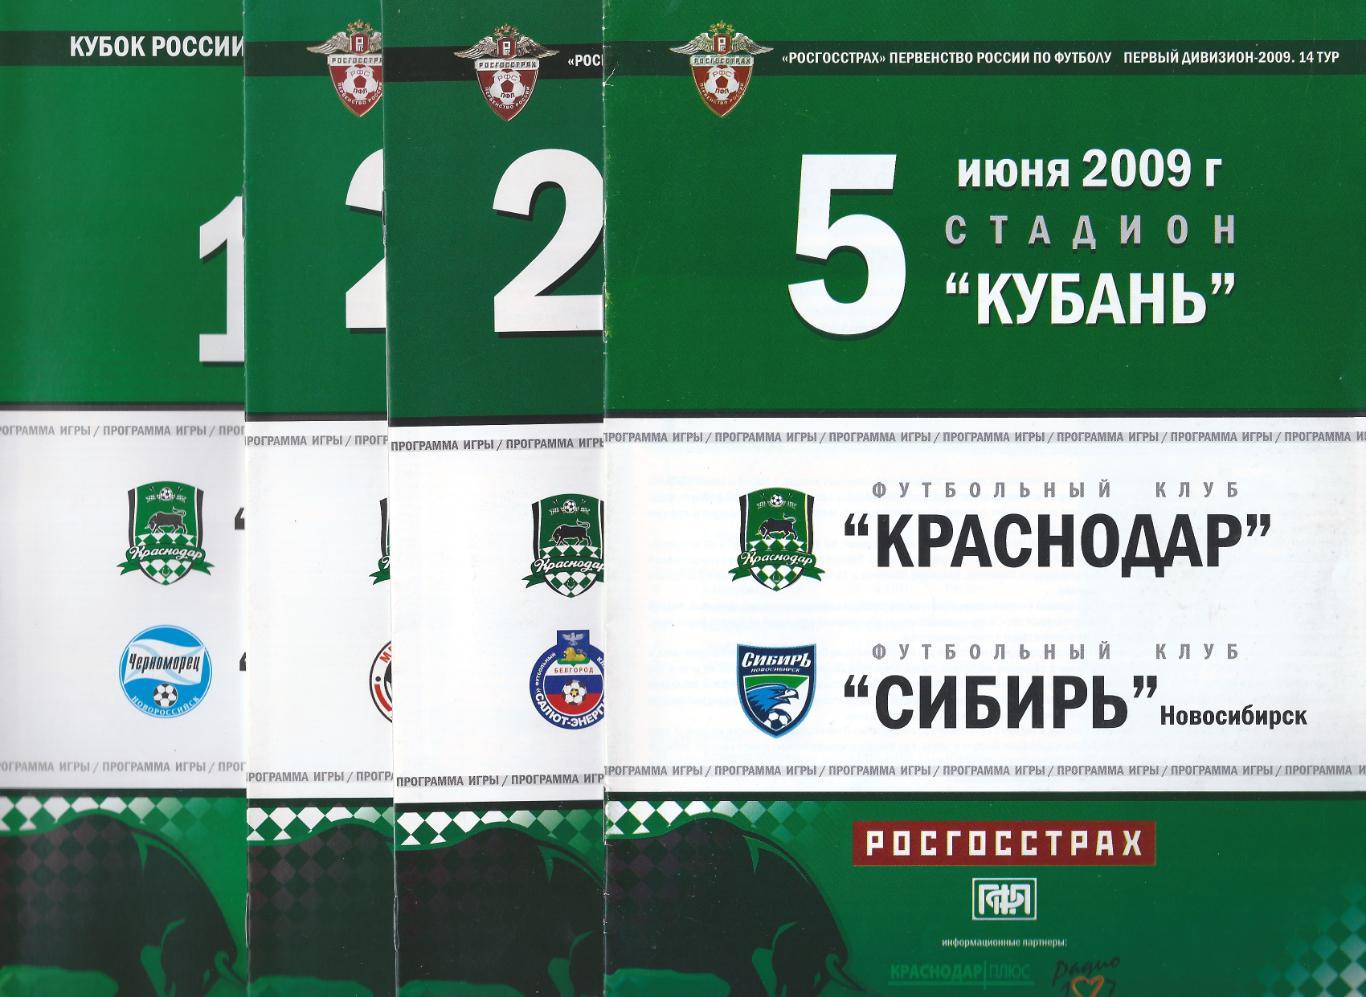 2009 - ФК Краснодар - Салют-Энергия Белгород